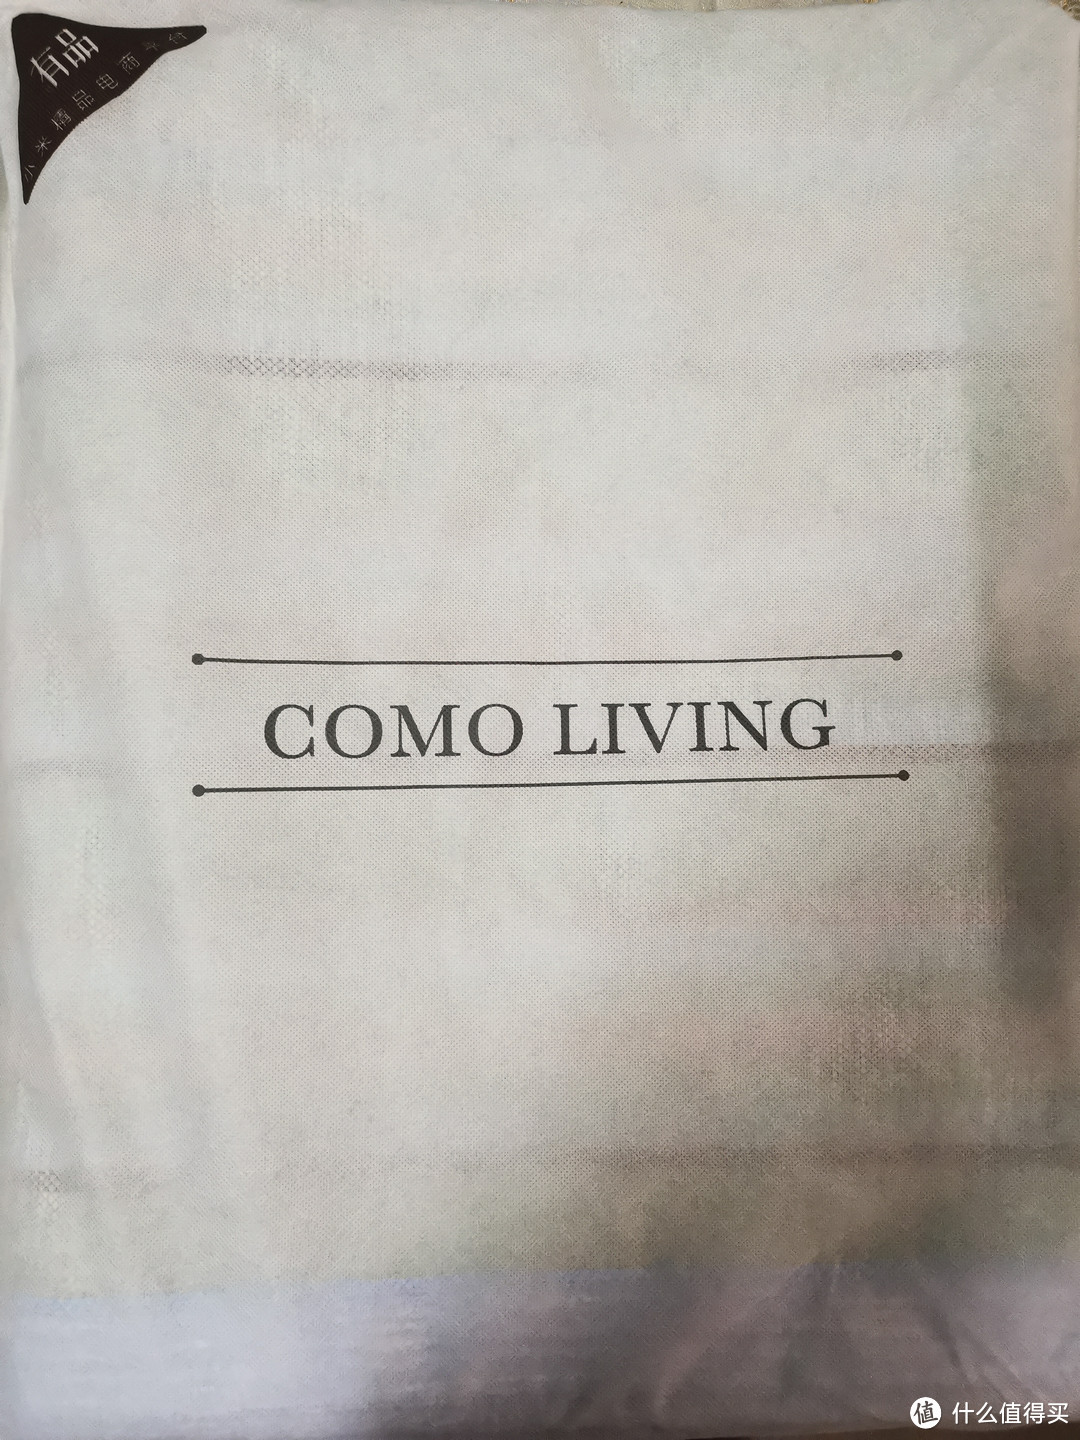 袋子正面是COMO LIVING字